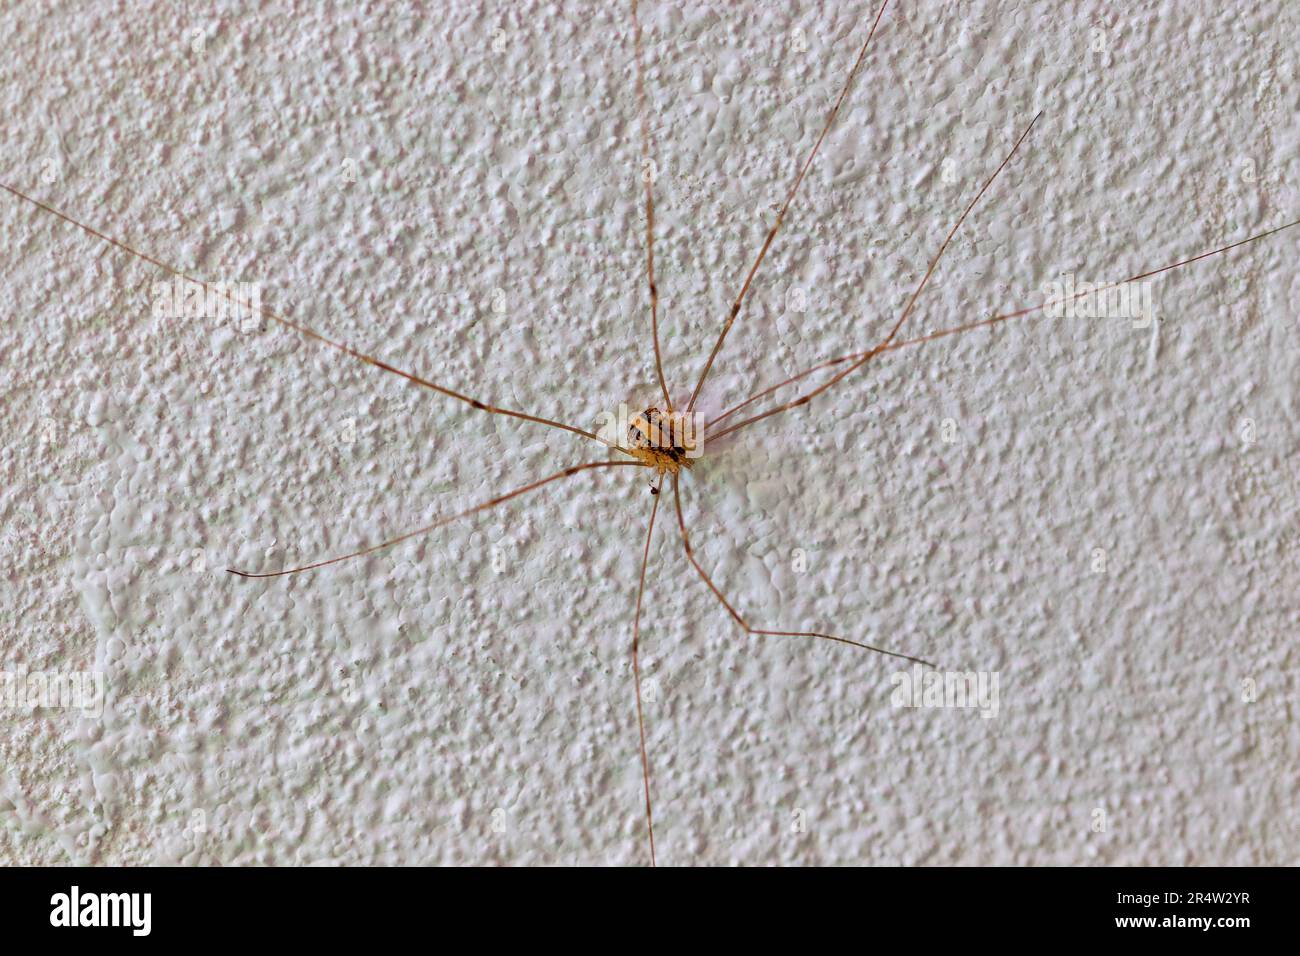 Cosmobunus granarius, Sclerosomatid Harvestmen Spider Foto Stock